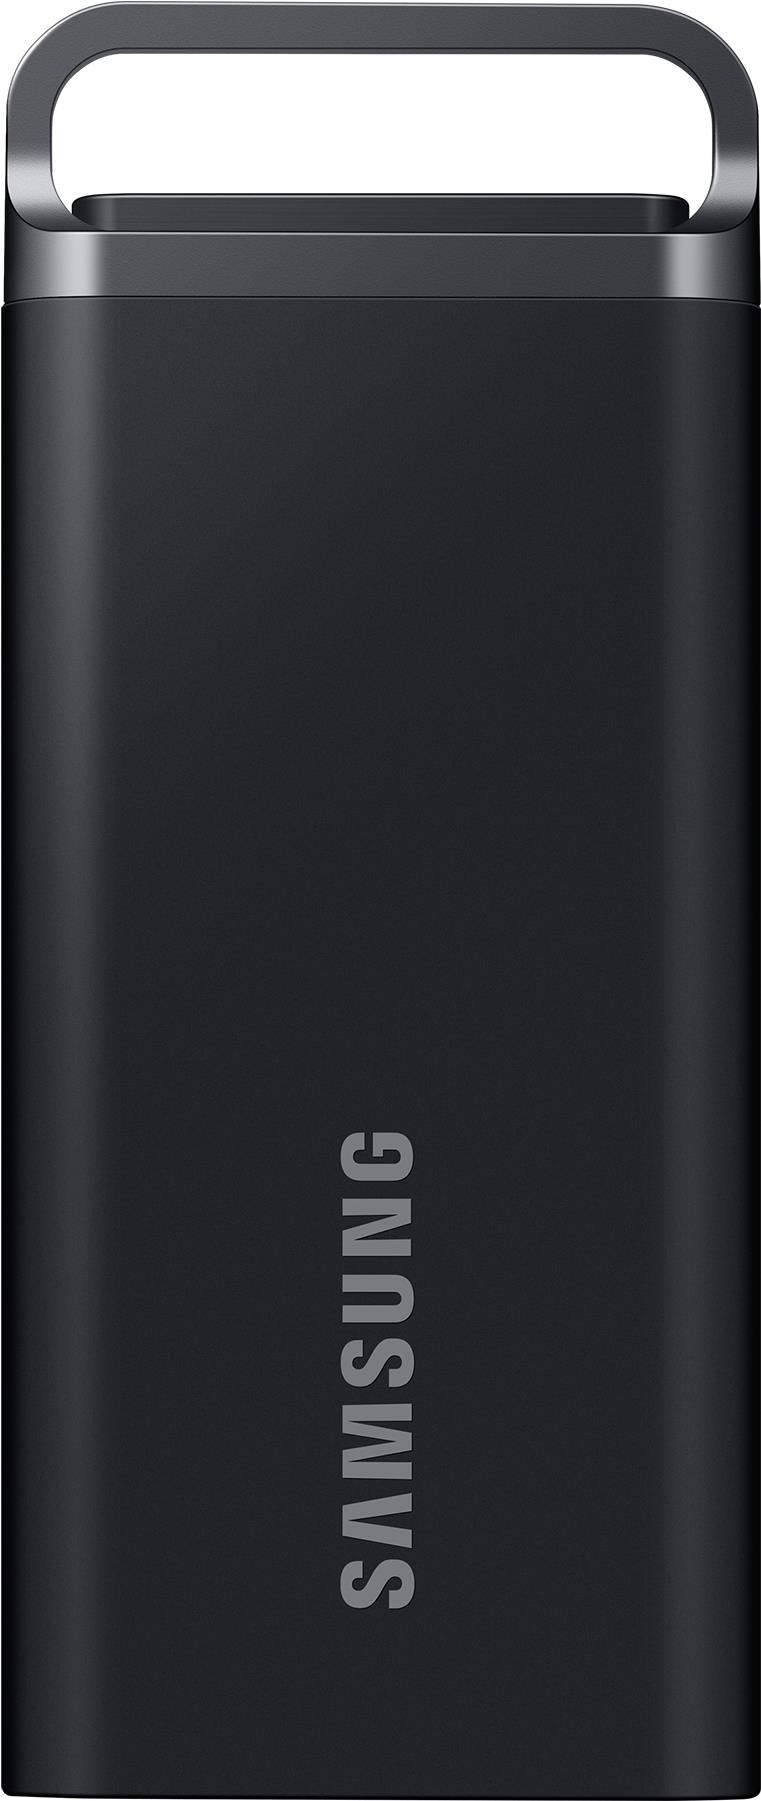 Samsung SSD 8TB Portable T5 EVO USB3.2 Gen.1 Black retail - Kompakter Speicher für unterwegs / 8 TB Kapazität / USB 3.1 Schnittstelle / Bis zu 460 MB/s Lese-/Schreibgeschwindigkeit / Sturzsicher aus bis zu 2 m Höhe (MU-PH8T0S/EU)